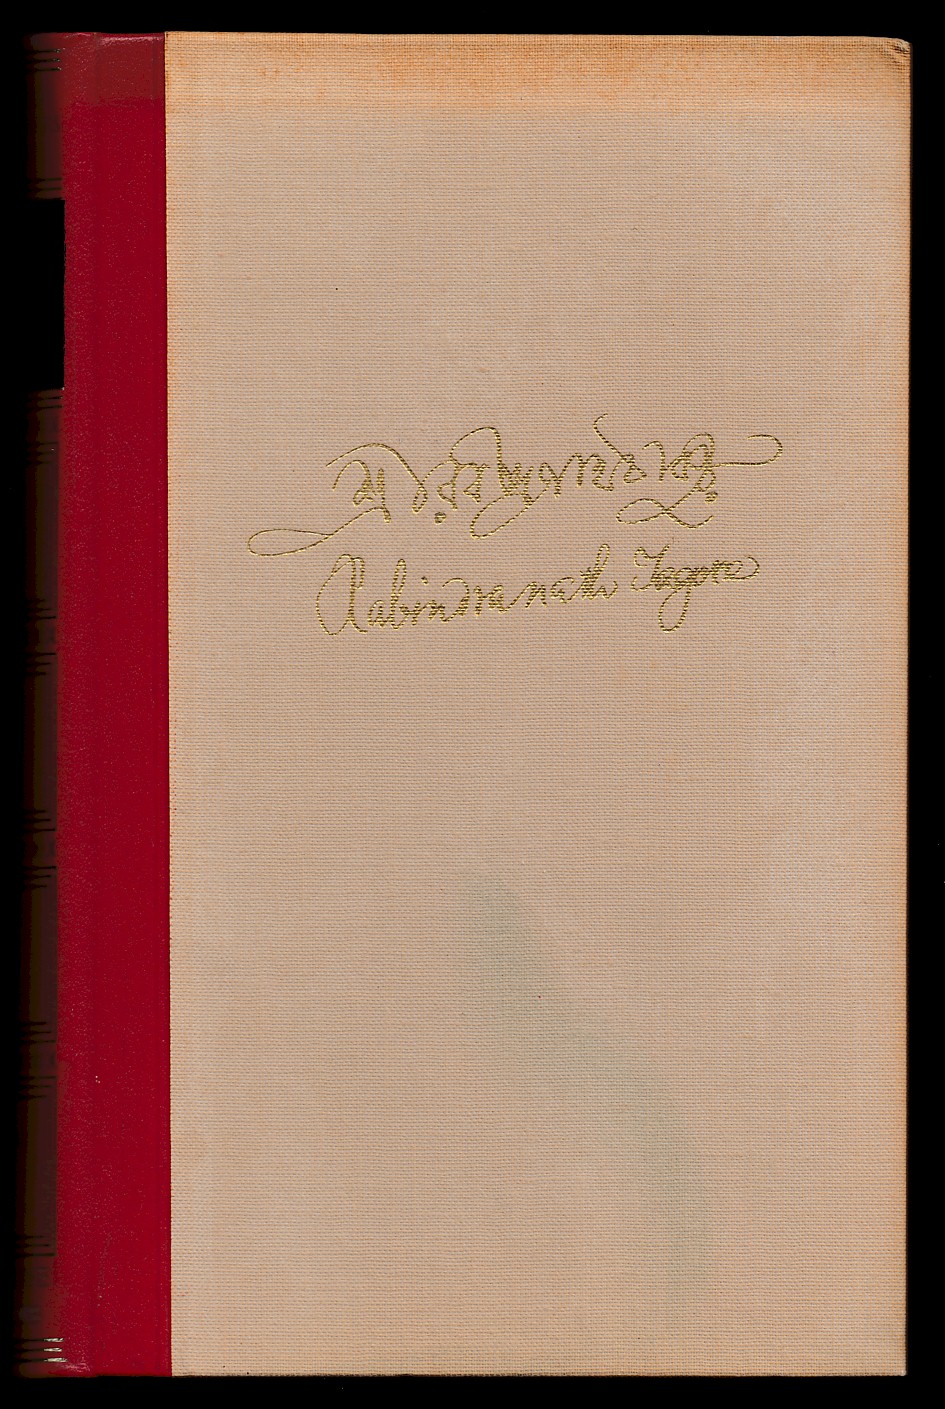 Tagore, Rabindranath - Verhalen, gedichten en toneel,  Met een inleiding over auteur en werk door Dr. Arnold A. Blake. (Vertalingen: J.W. Hofstra en A. Blok)